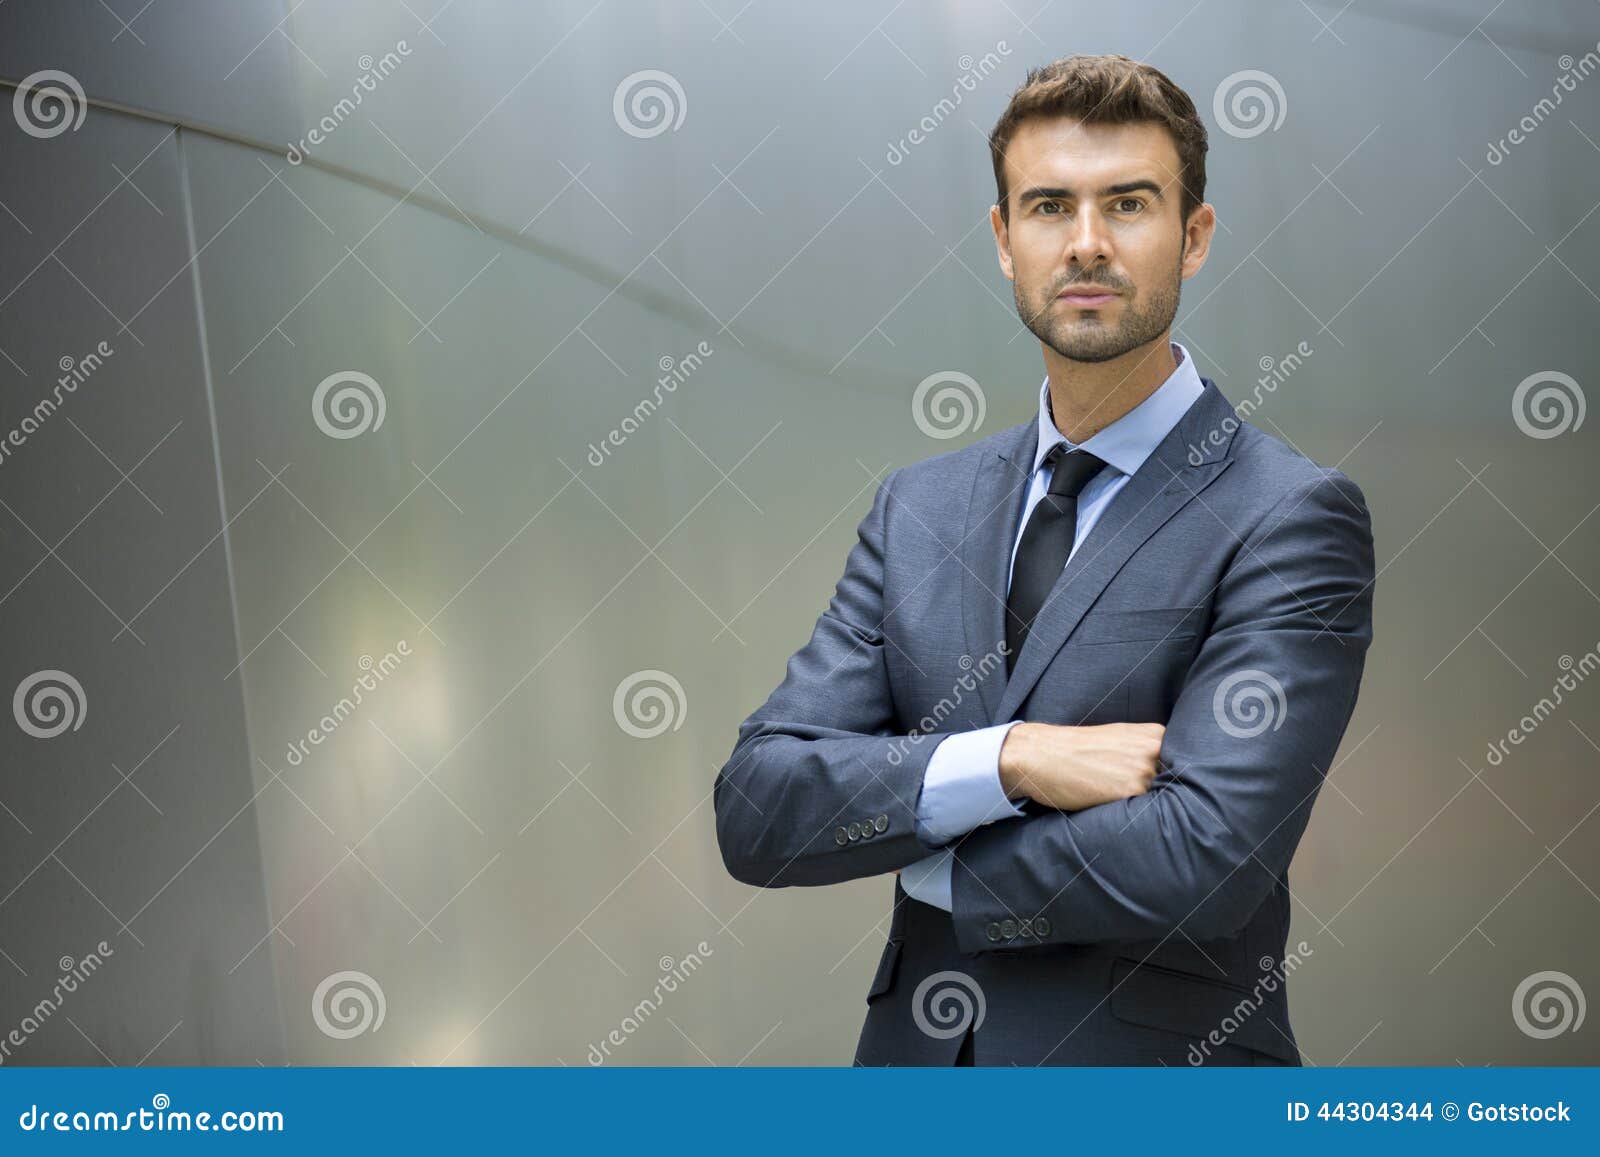 business man standing confident portrait